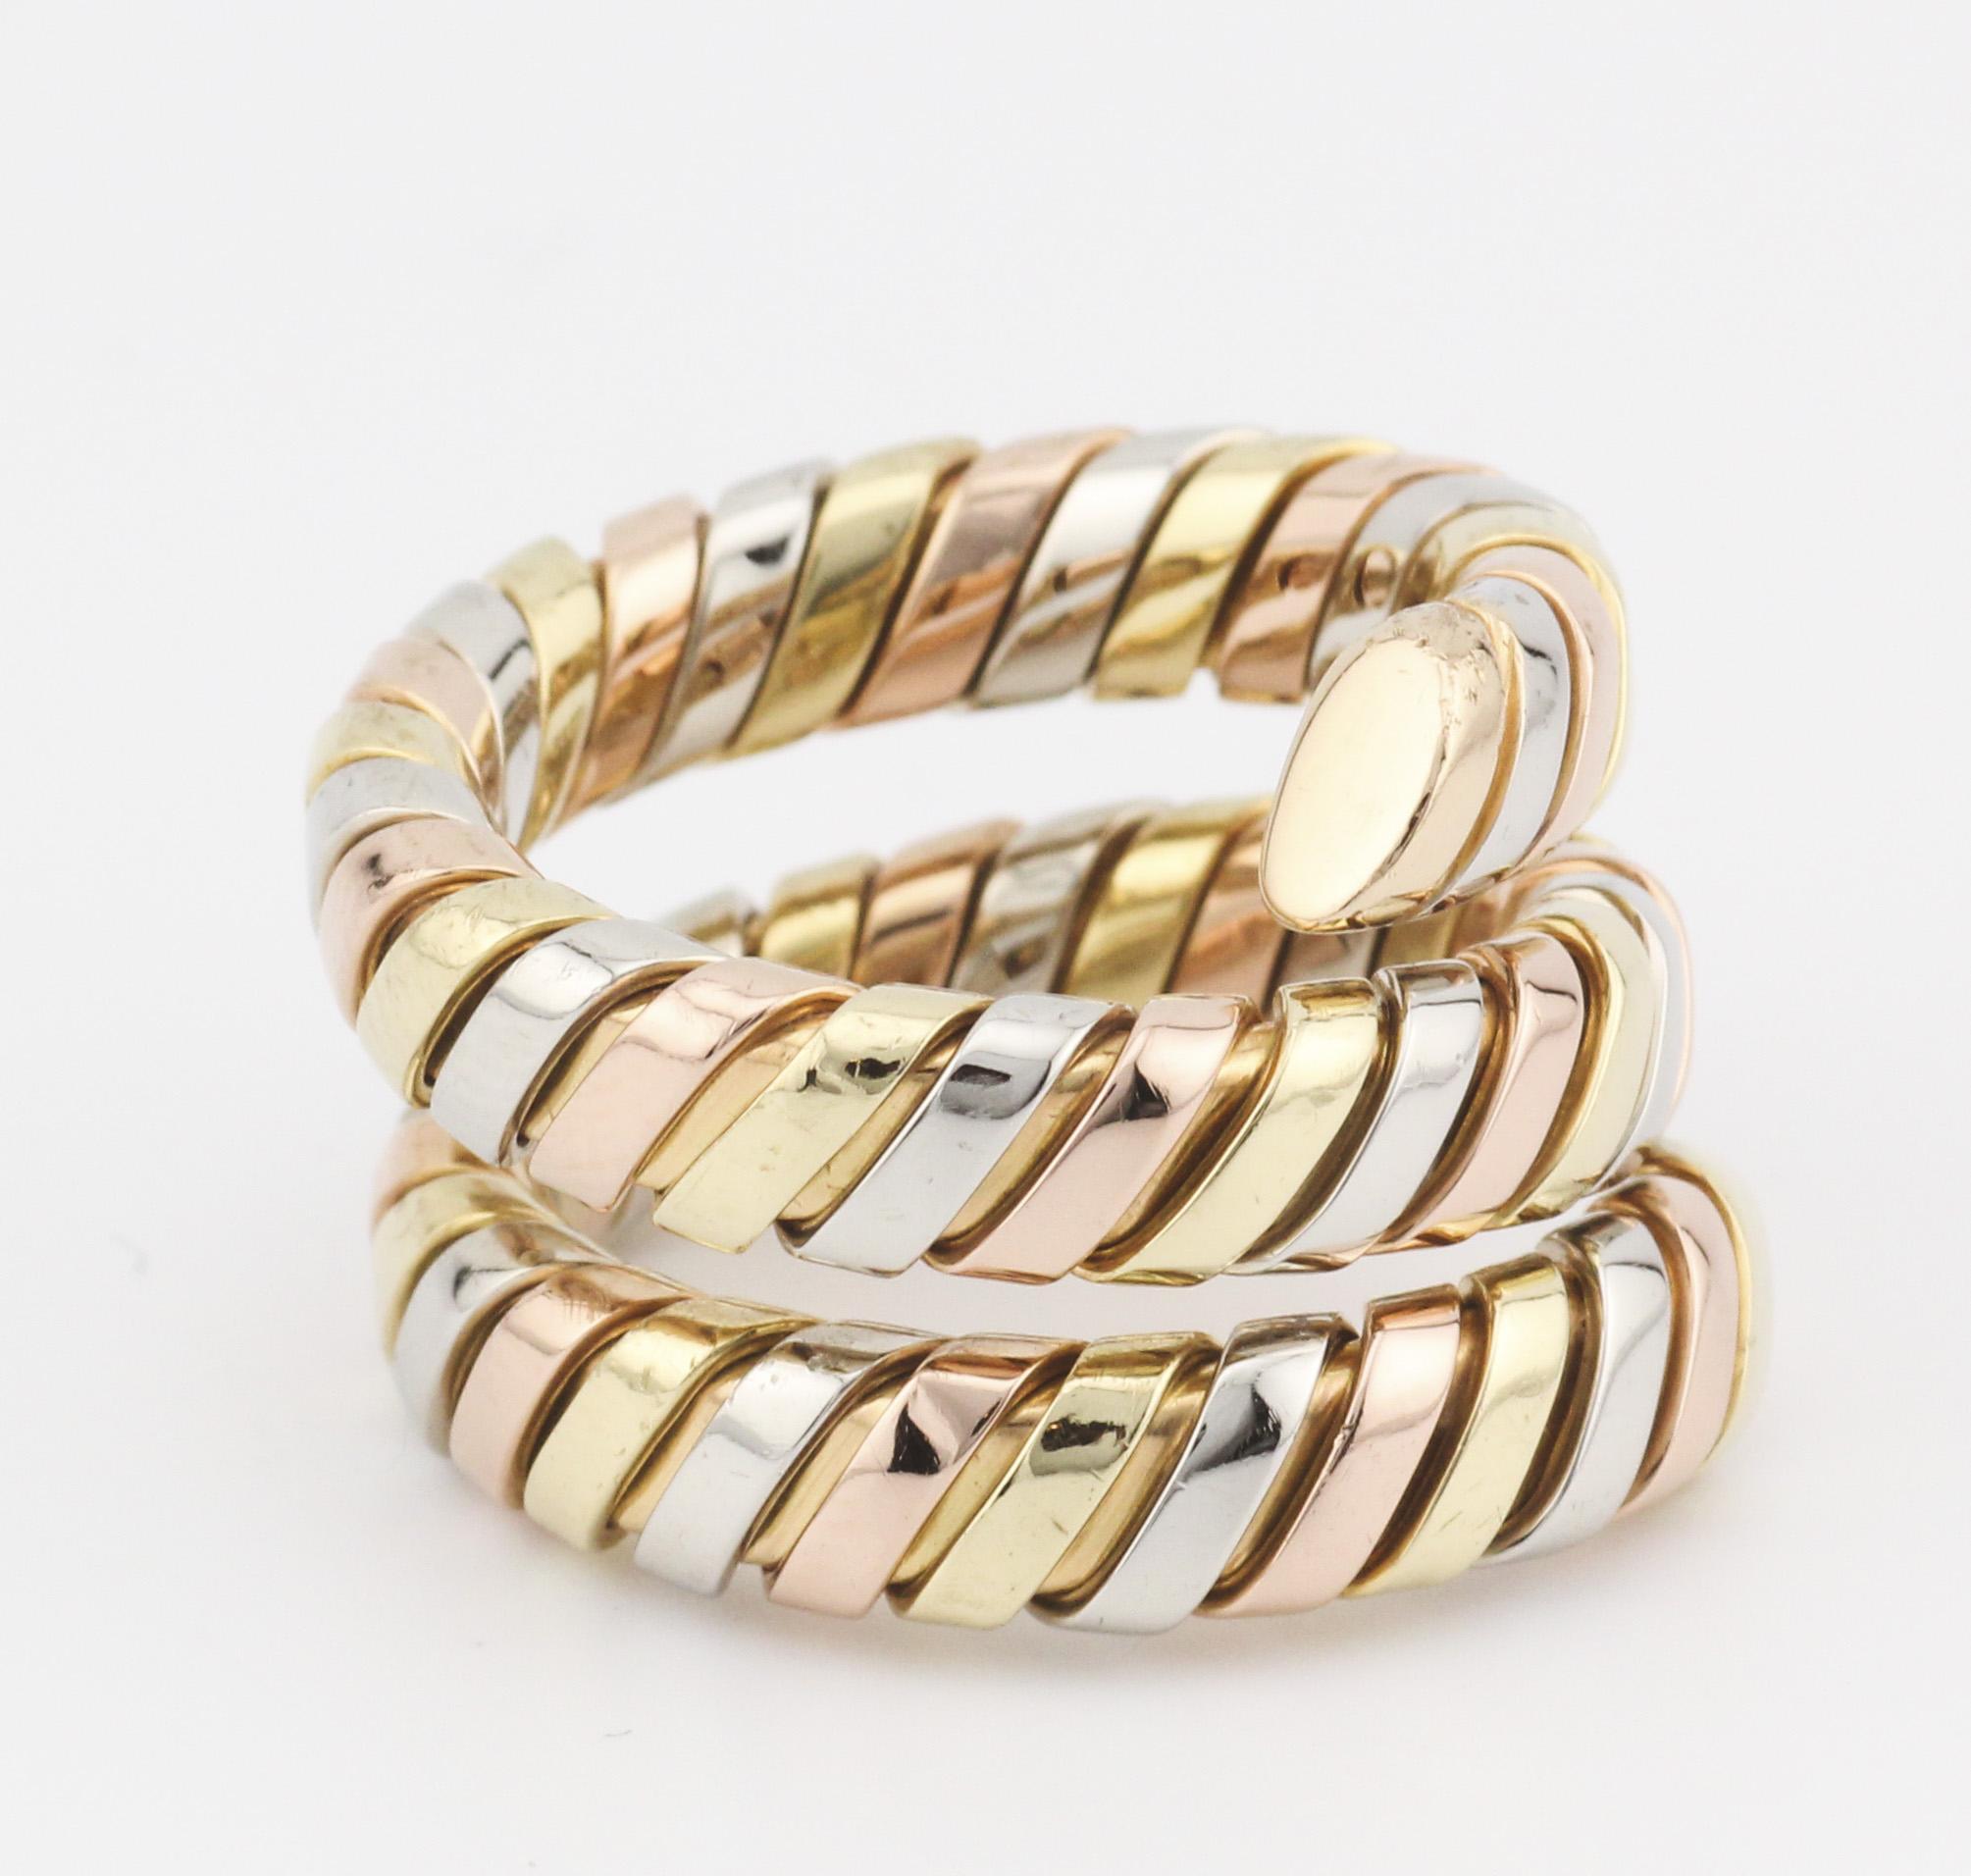 Der Bulgari Tubogas 3 Color 18K Gold Flexible Snake Ring ist eine faszinierende Mischung aus ikonischem Design und luxuriöser Handwerkskunst aus dem angesehenen italienischen Schmuckhaus Bulgari. Dieser Ring ist eine exquisite Darstellung der